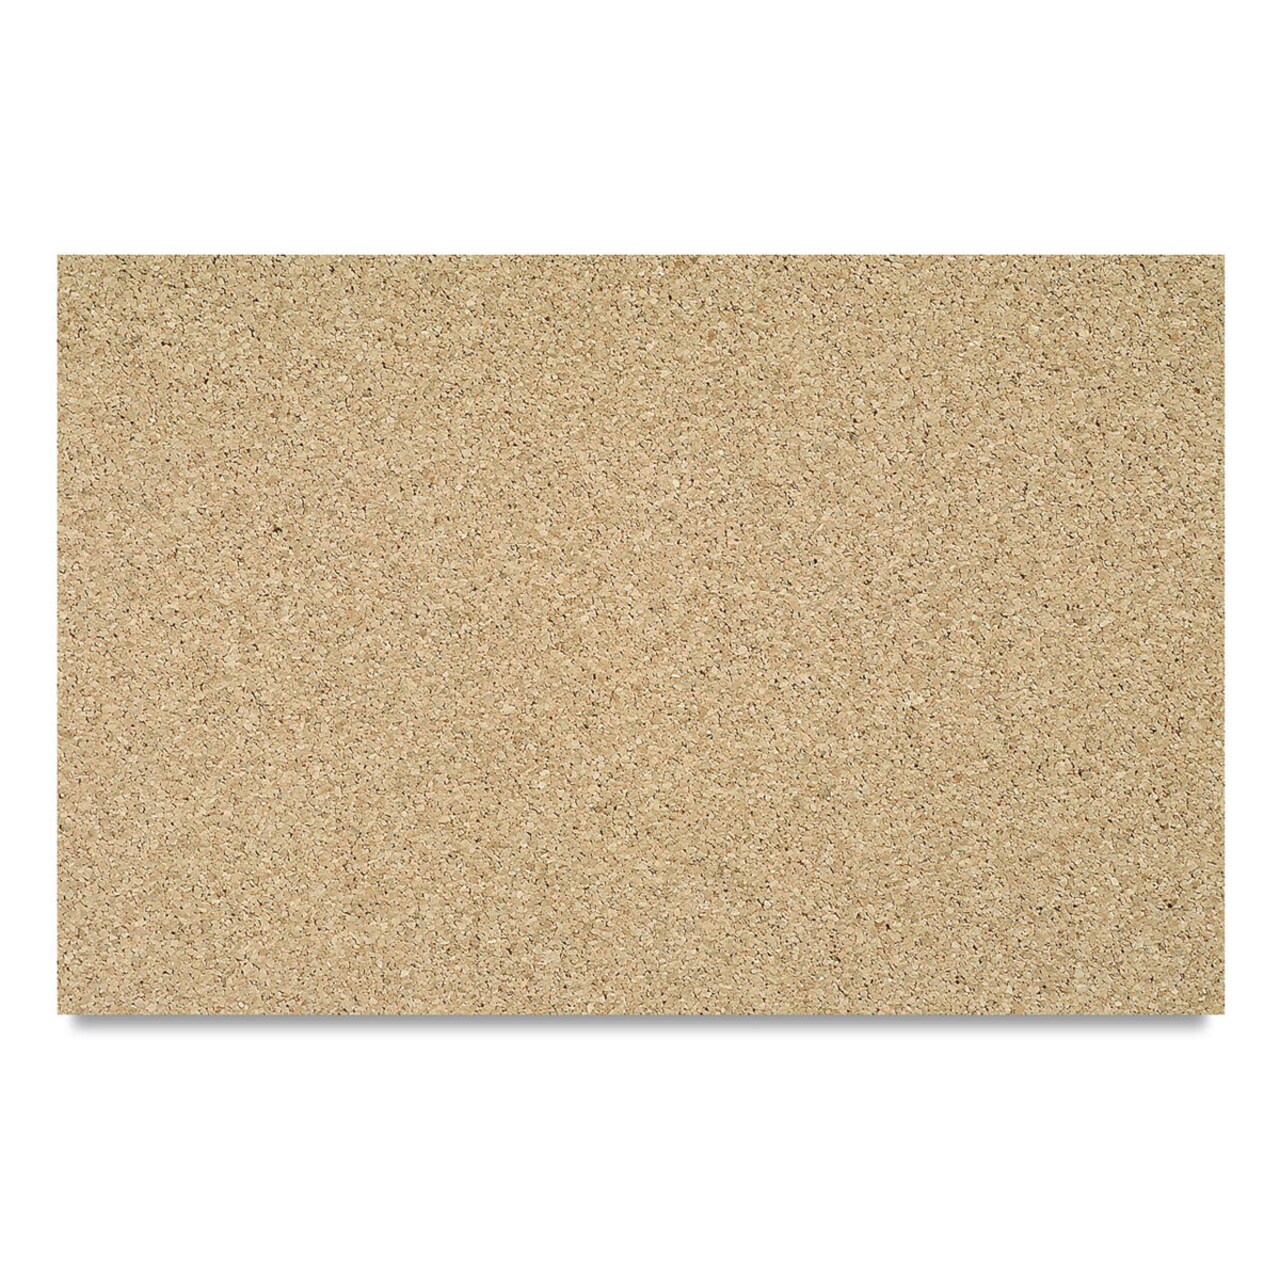 Natural Cork Sheet - 1/8 thick, 12 x 18